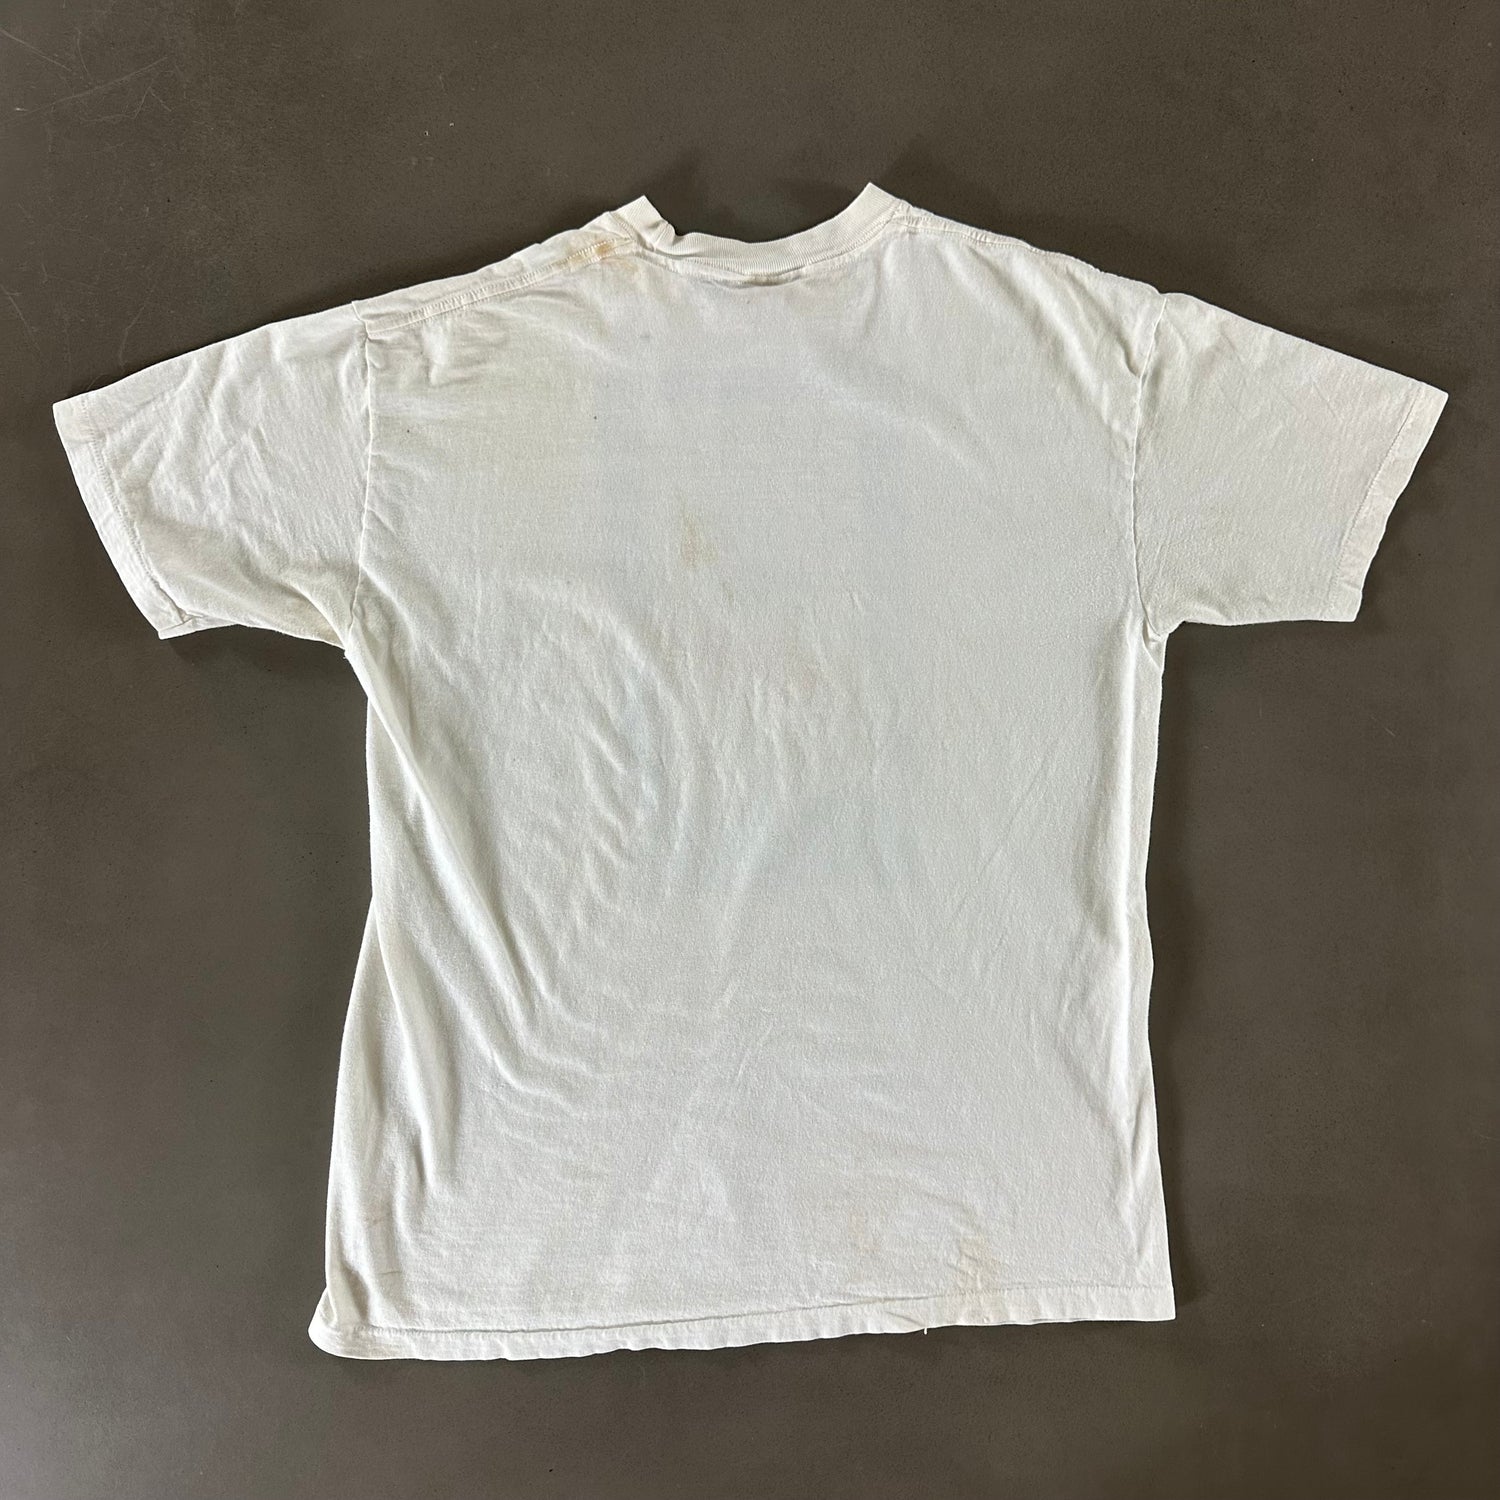 Vintage 1987 US Open Tennis T-shirt size XL